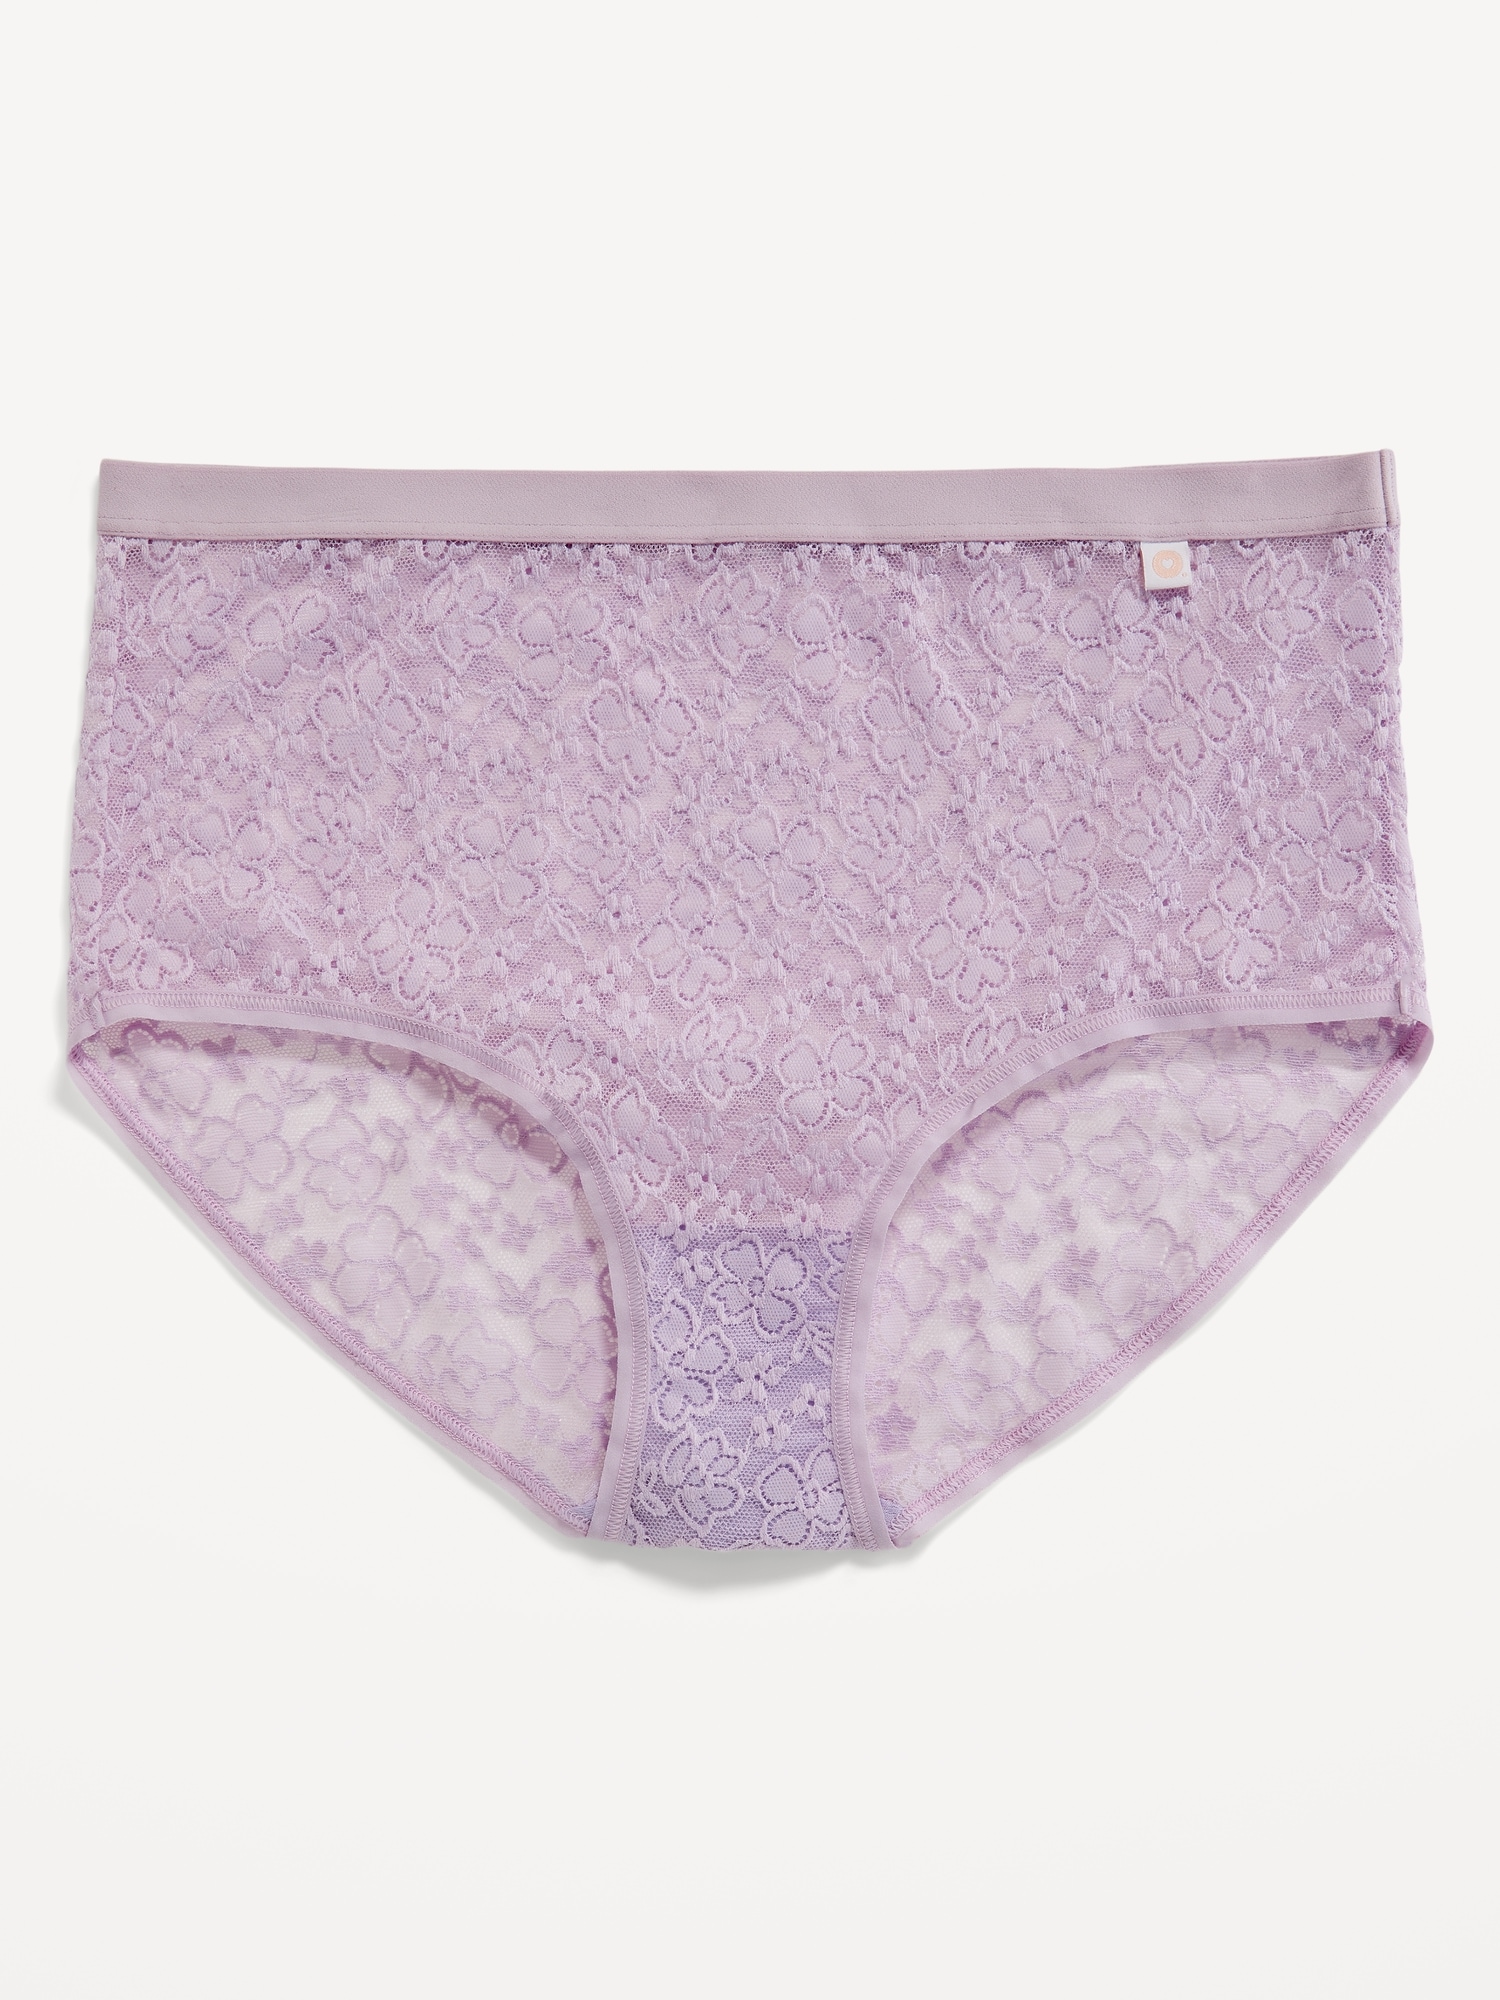 High-Waisted Lace Bikini Underwear